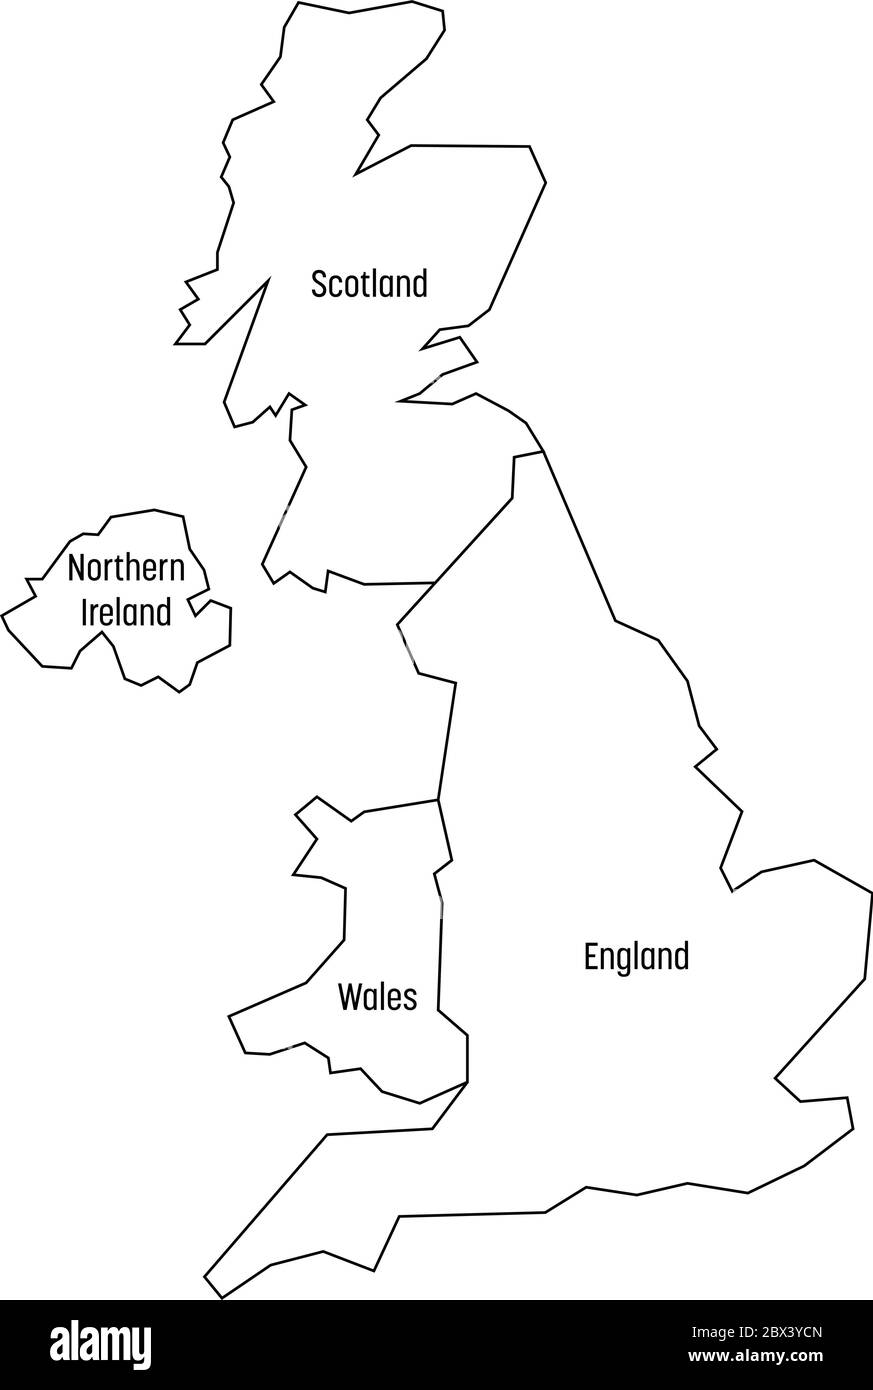 Mappa dei paesi del Regno Unito - Inghilterra, Galles, Scozia e Irlanda del Nord. Mappa vettoriale semplice piatta con etichette. Illustrazione Vettoriale